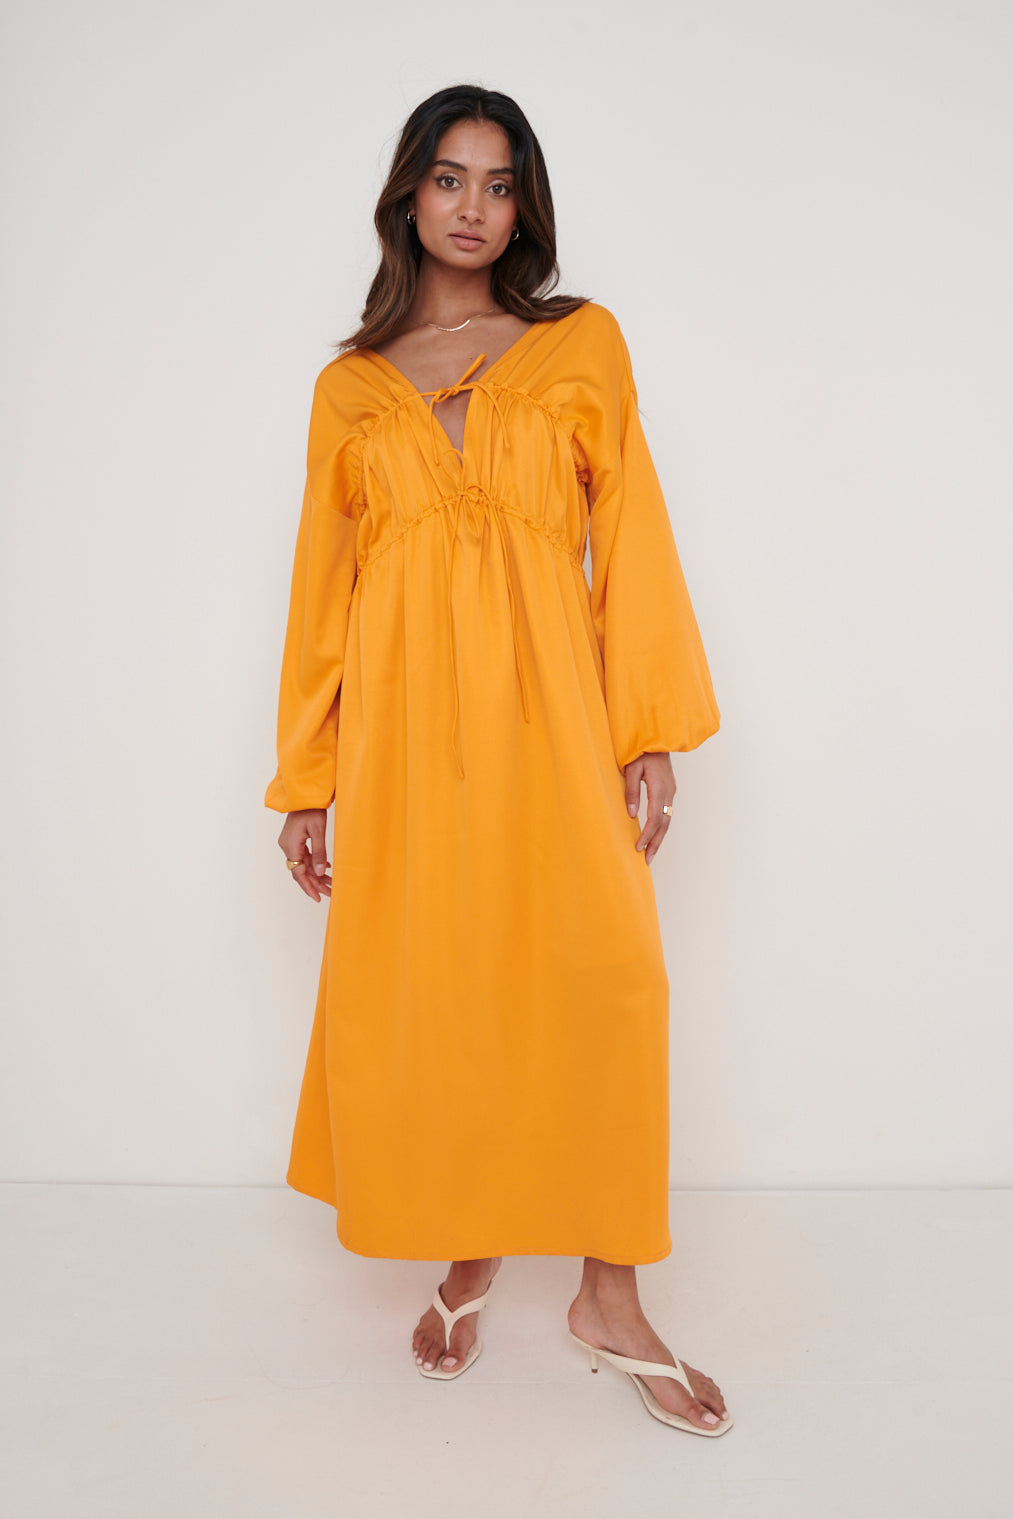 Ottilie Tie Midaxi Dress - Tangerine, 16